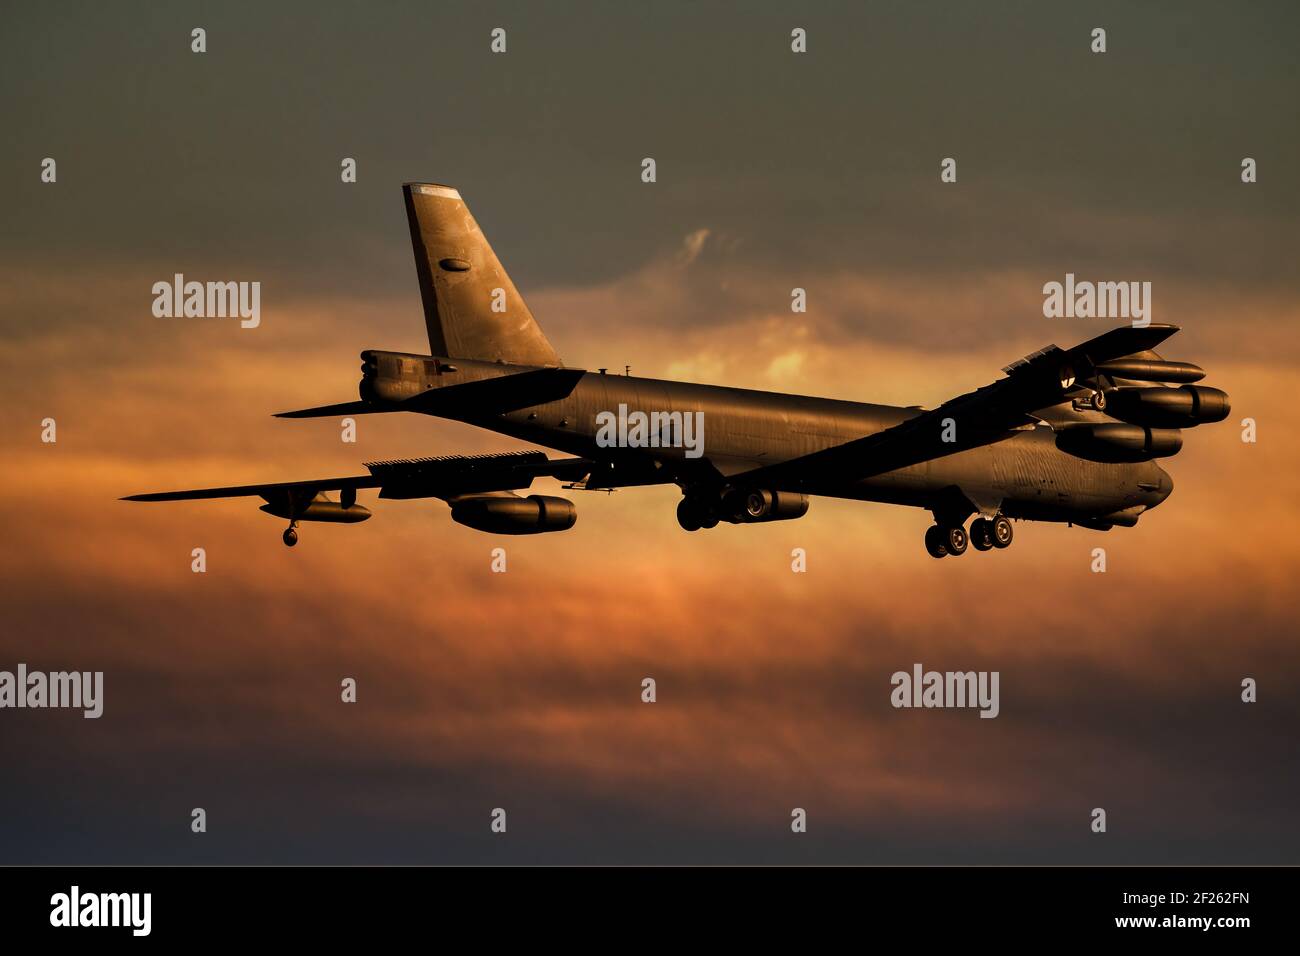 B52 Bomberlandung bei Sonnenuntergang. Die Boeing B-52 hat einen Atombomber gegen einen orangefarbenen Himmel angetrieben Stockfoto